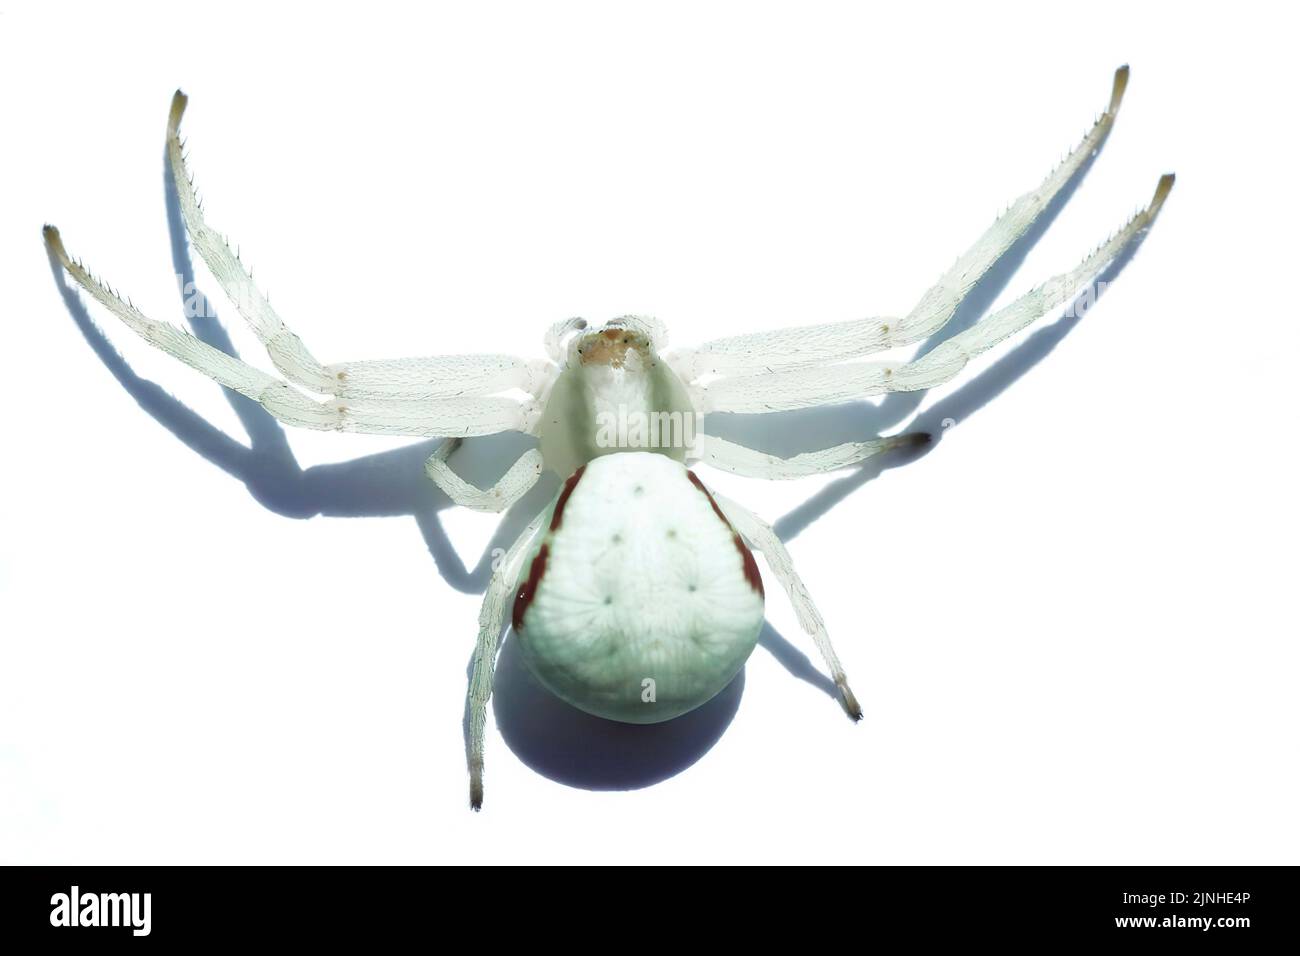 Krabbenspinne (Misumenta vatia) isoliert auf Weiß Stockfoto